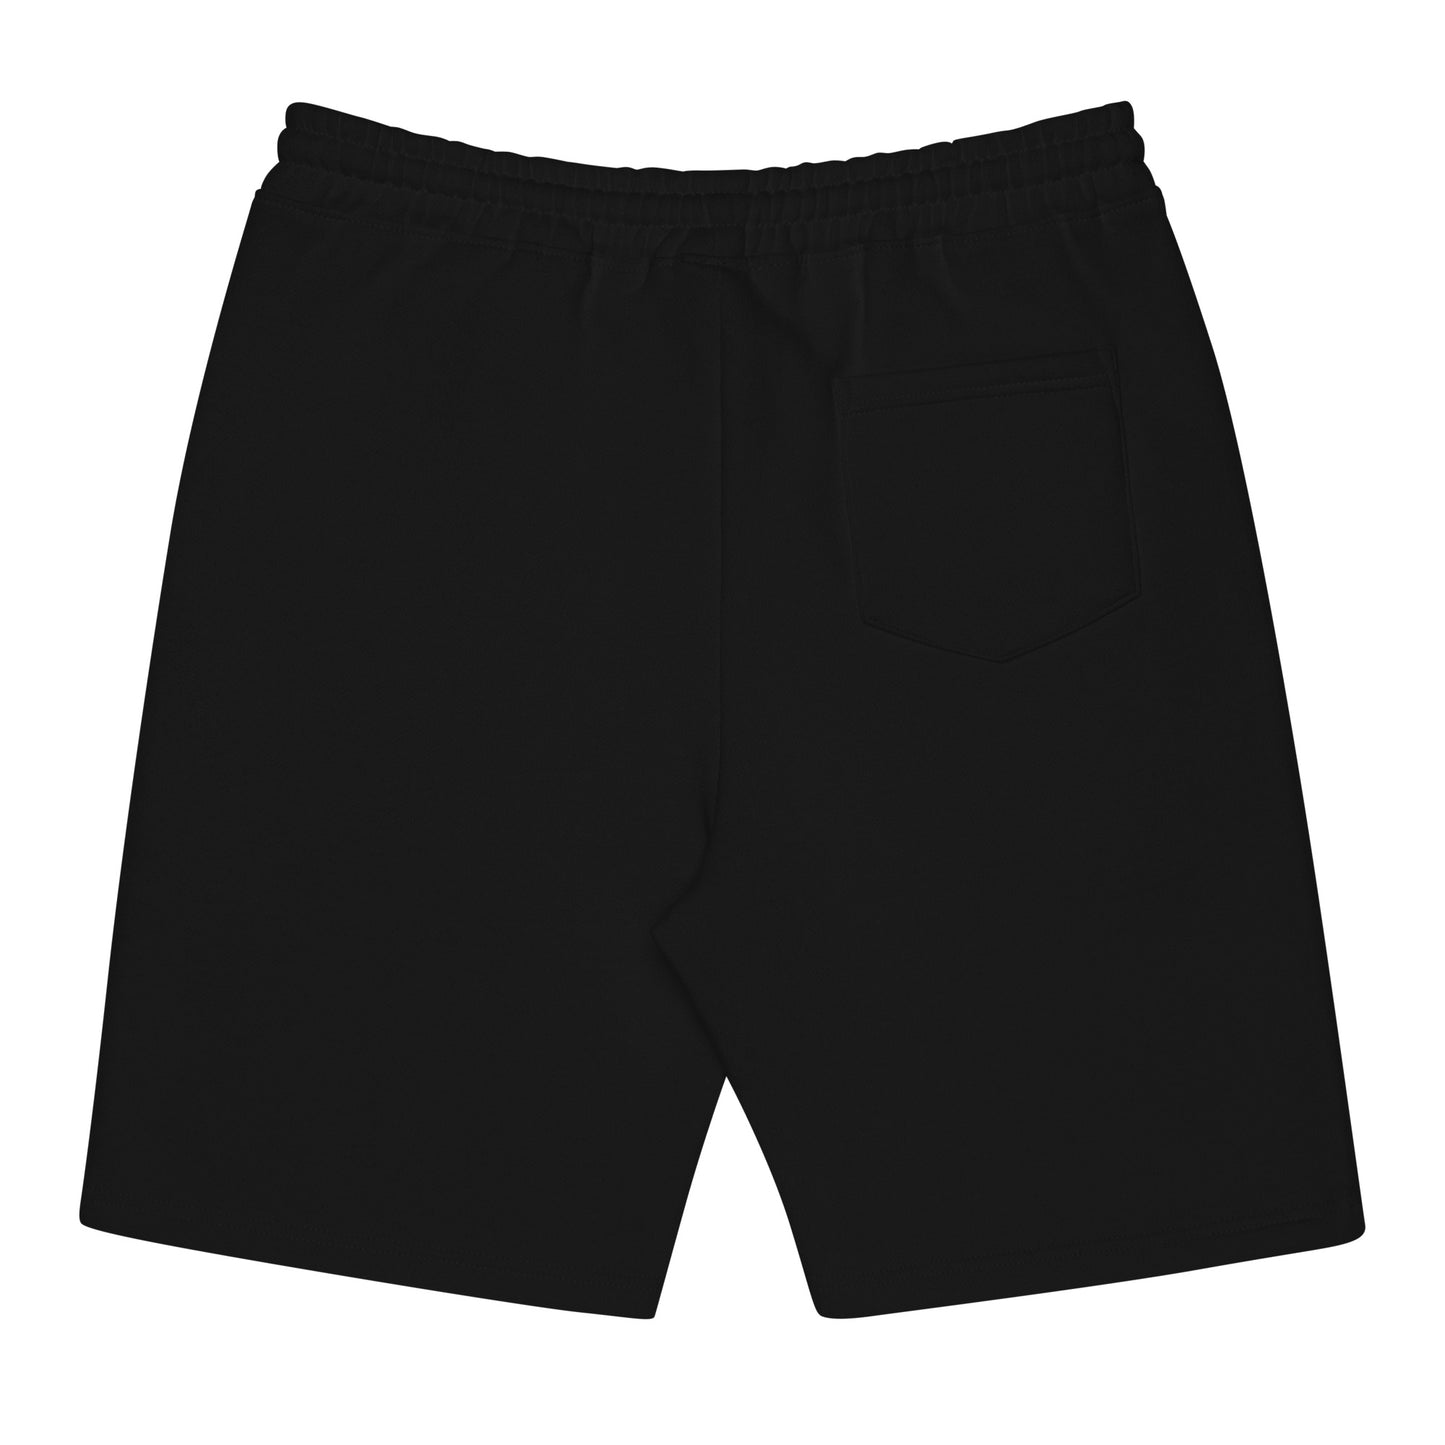 8th Dimention Men's fleece shorts